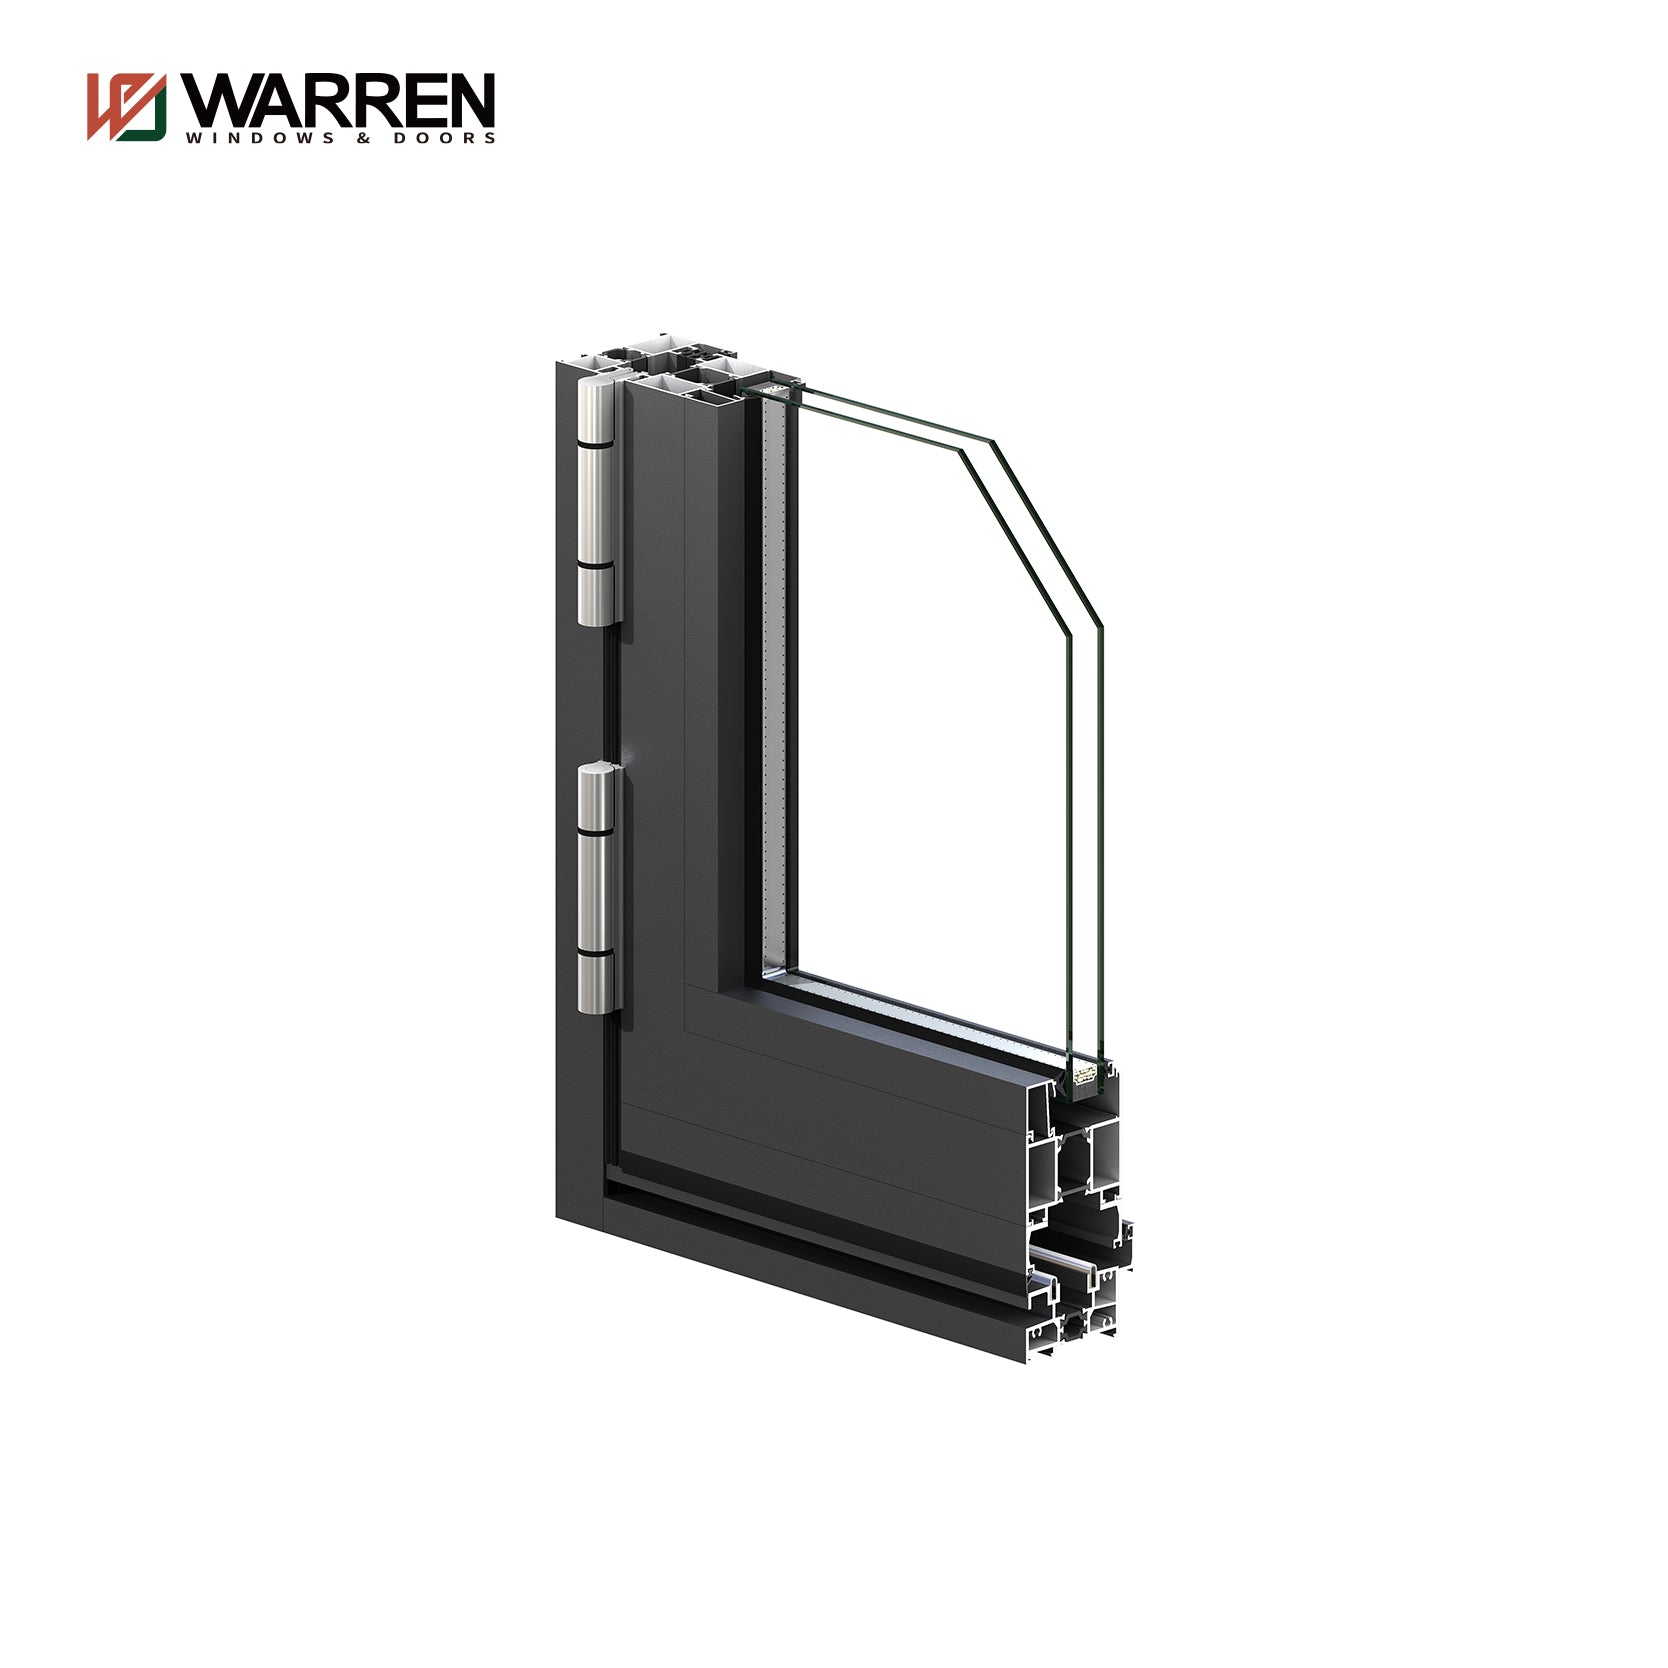 Warren Custom Made Waterproof Insulation Room Door Bi-Folding Aluminum Doors